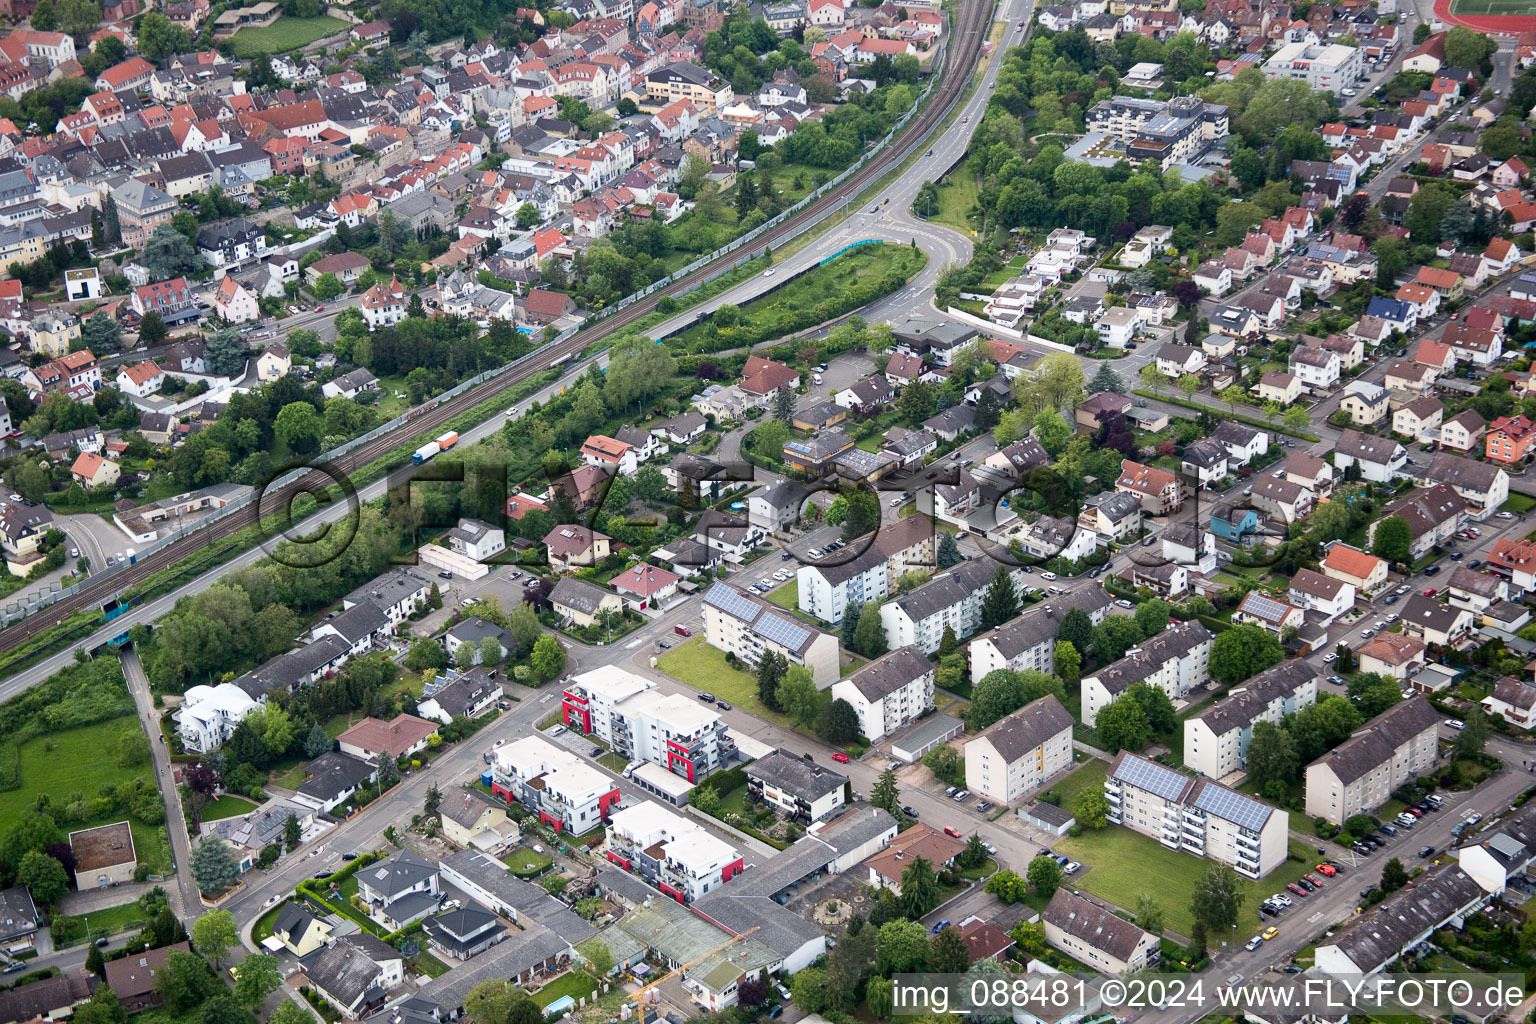 Oppenheim im Bundesland Rheinland-Pfalz, Deutschland aus der Drohnenperspektive